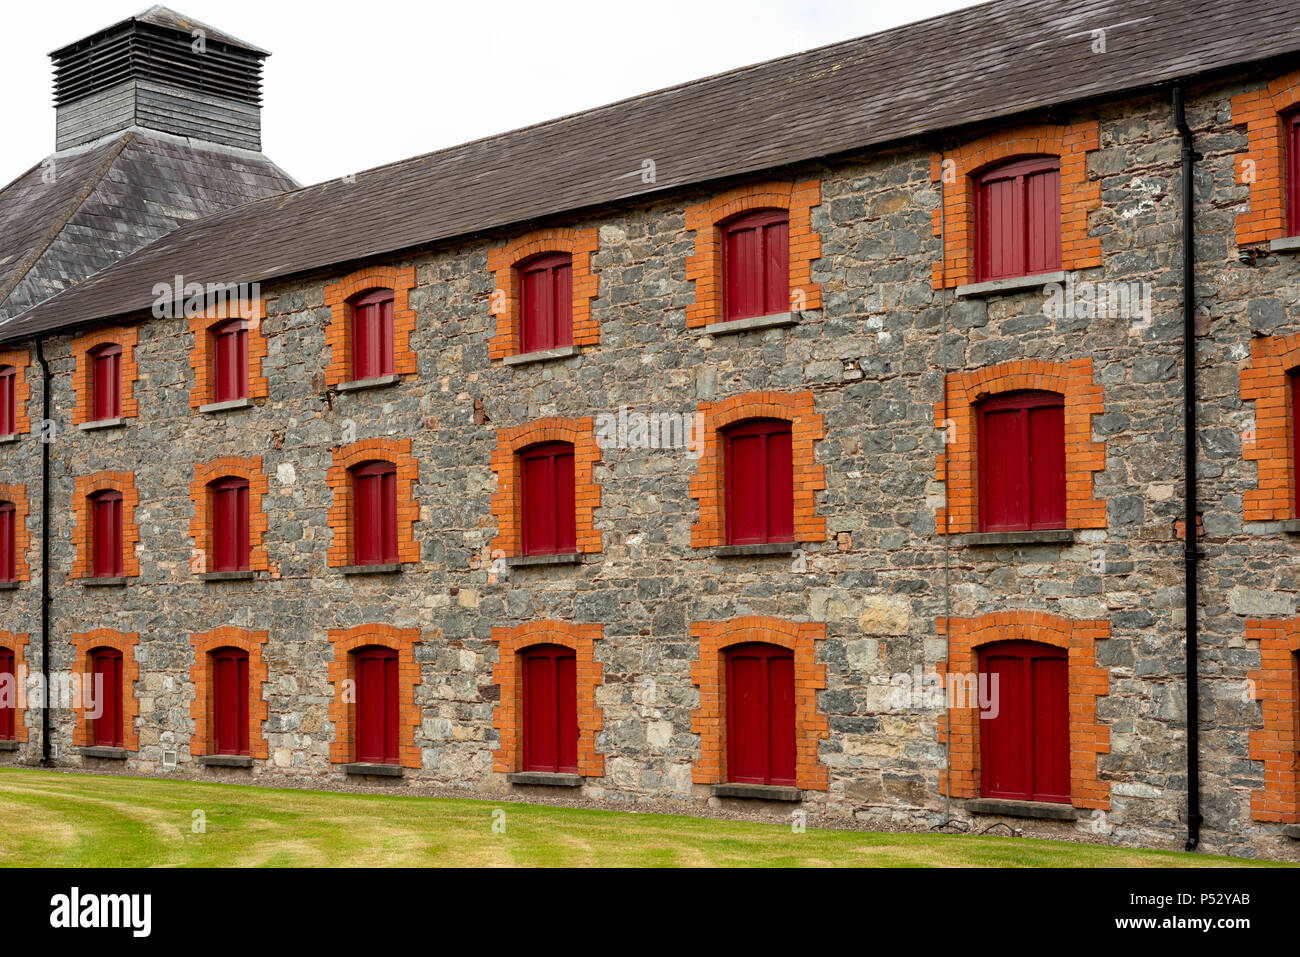 Midleton Distillery antiguo edificio industrial con ventanas rojas y piedra Paredes fachada detalles de la destilería Old Jameson Whiskey in Midleton Irlanda Foto de stock